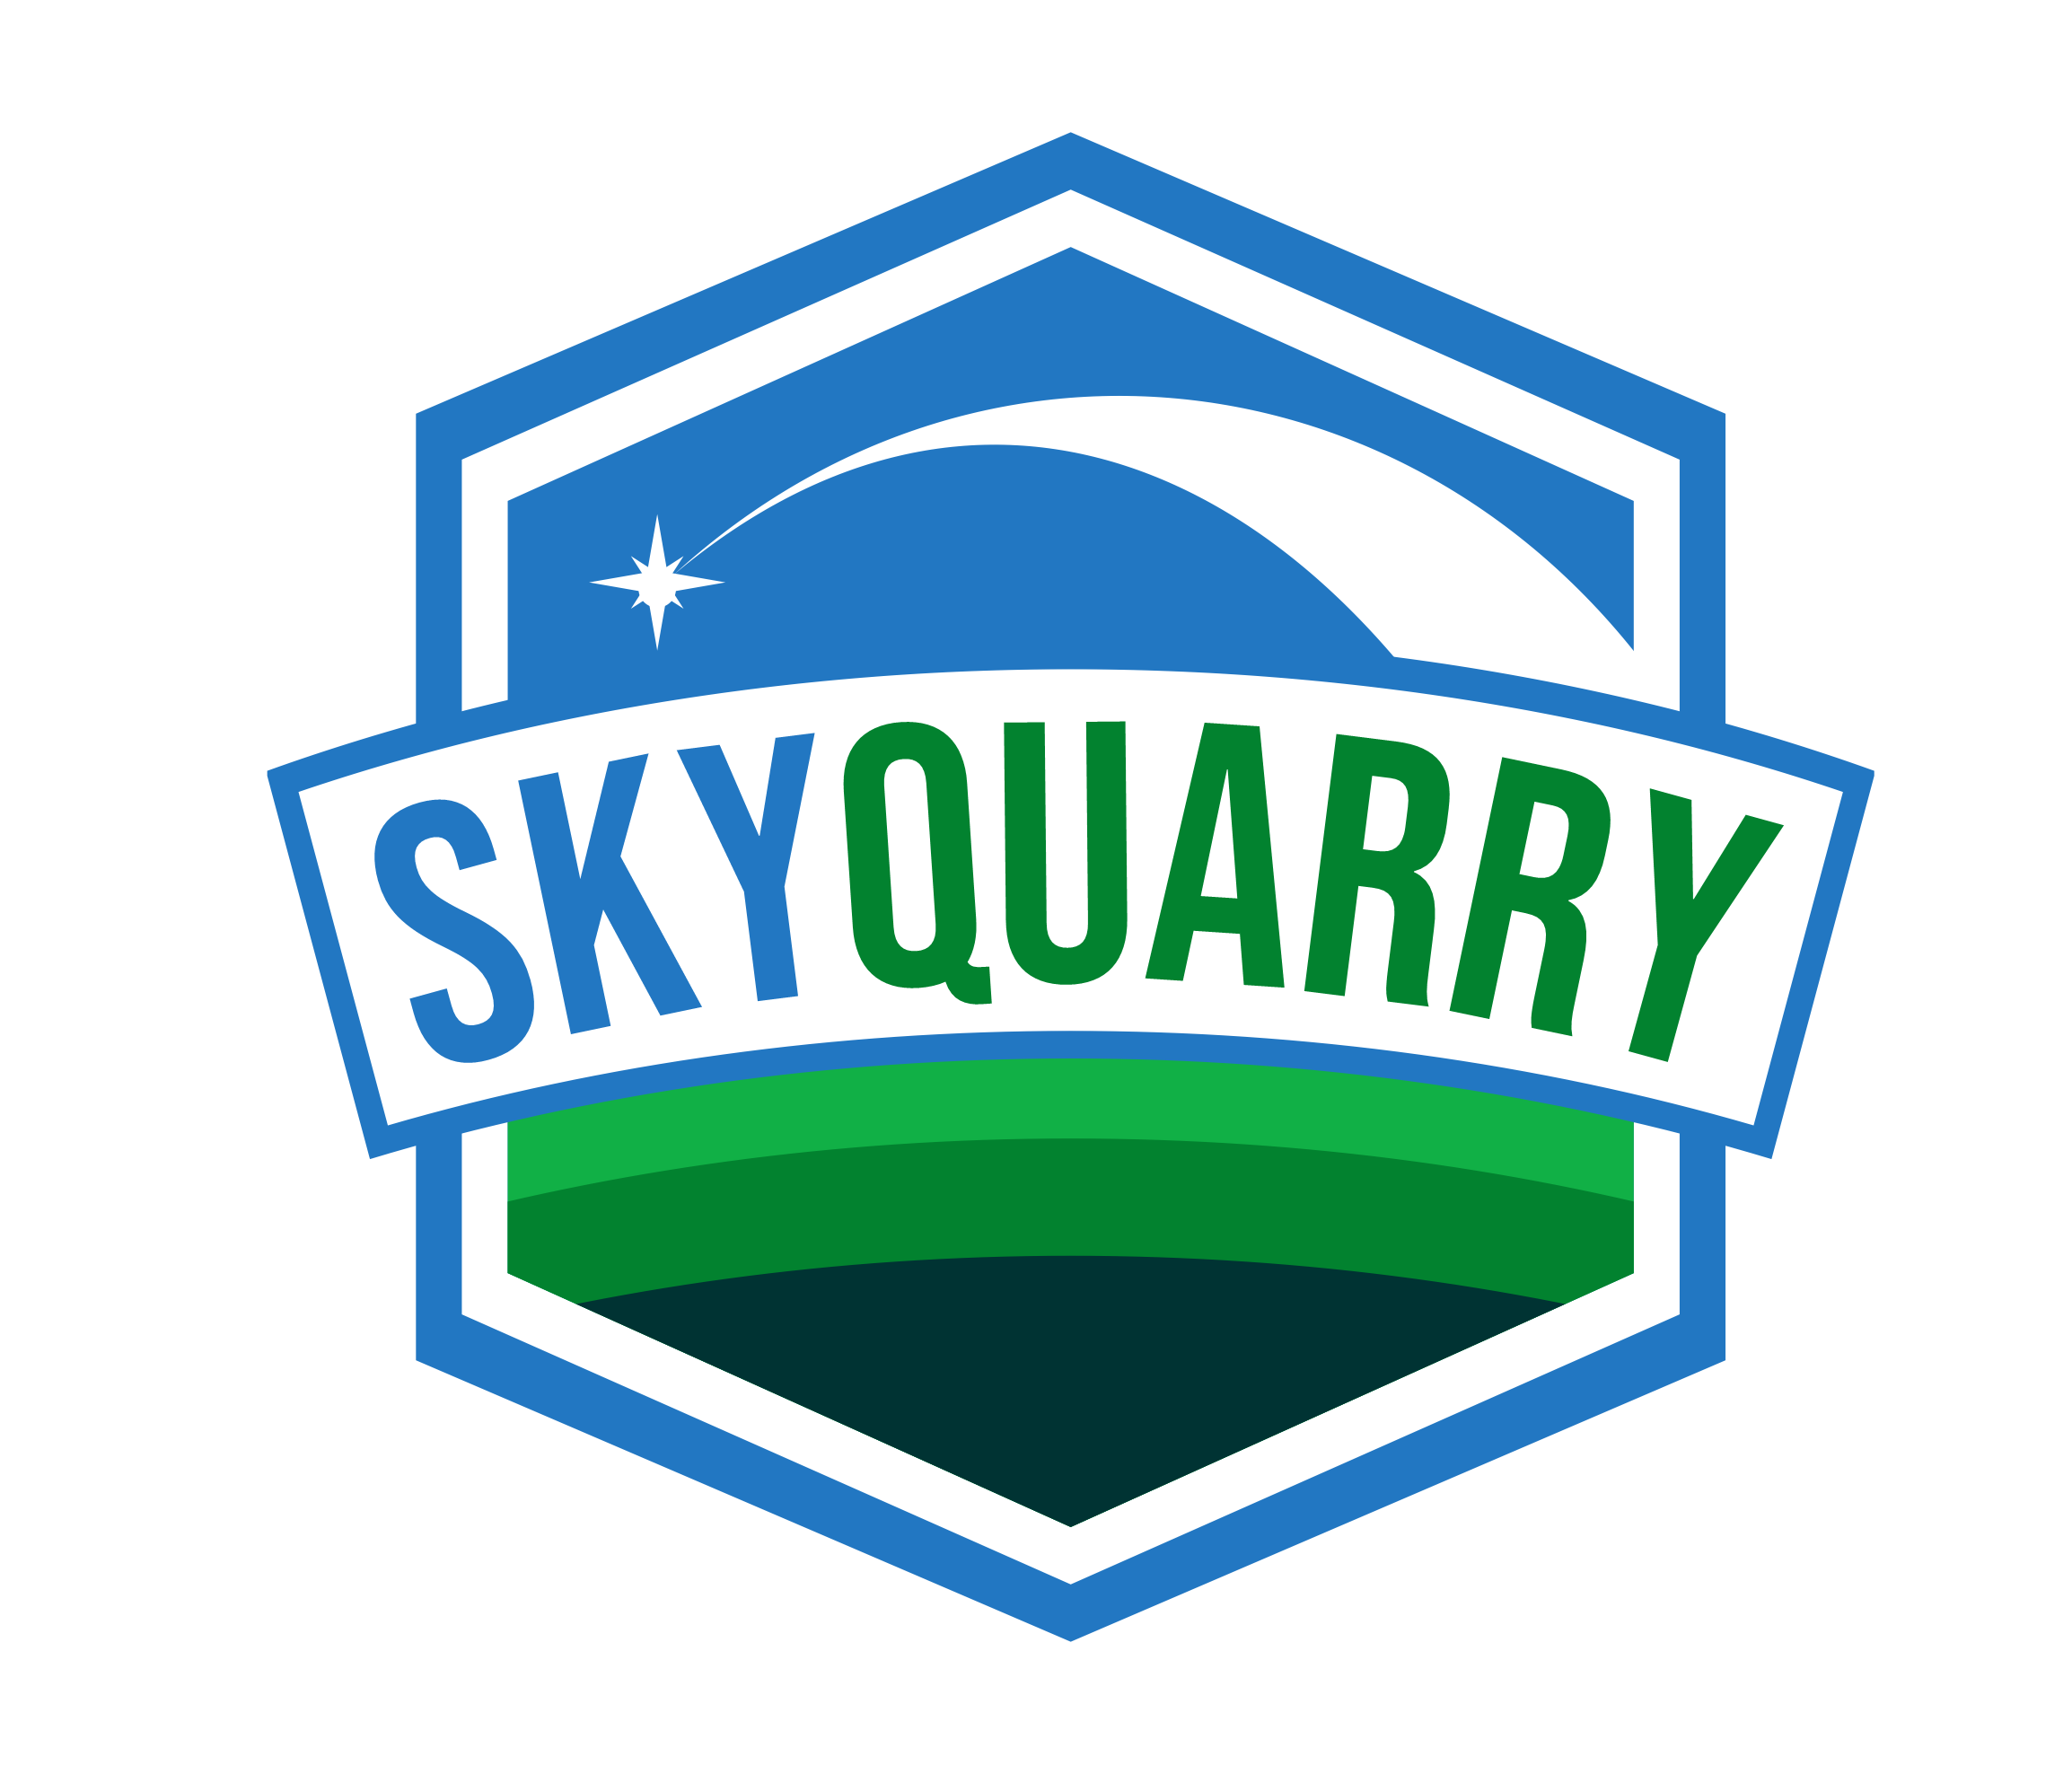 Invest in Sky Quarry